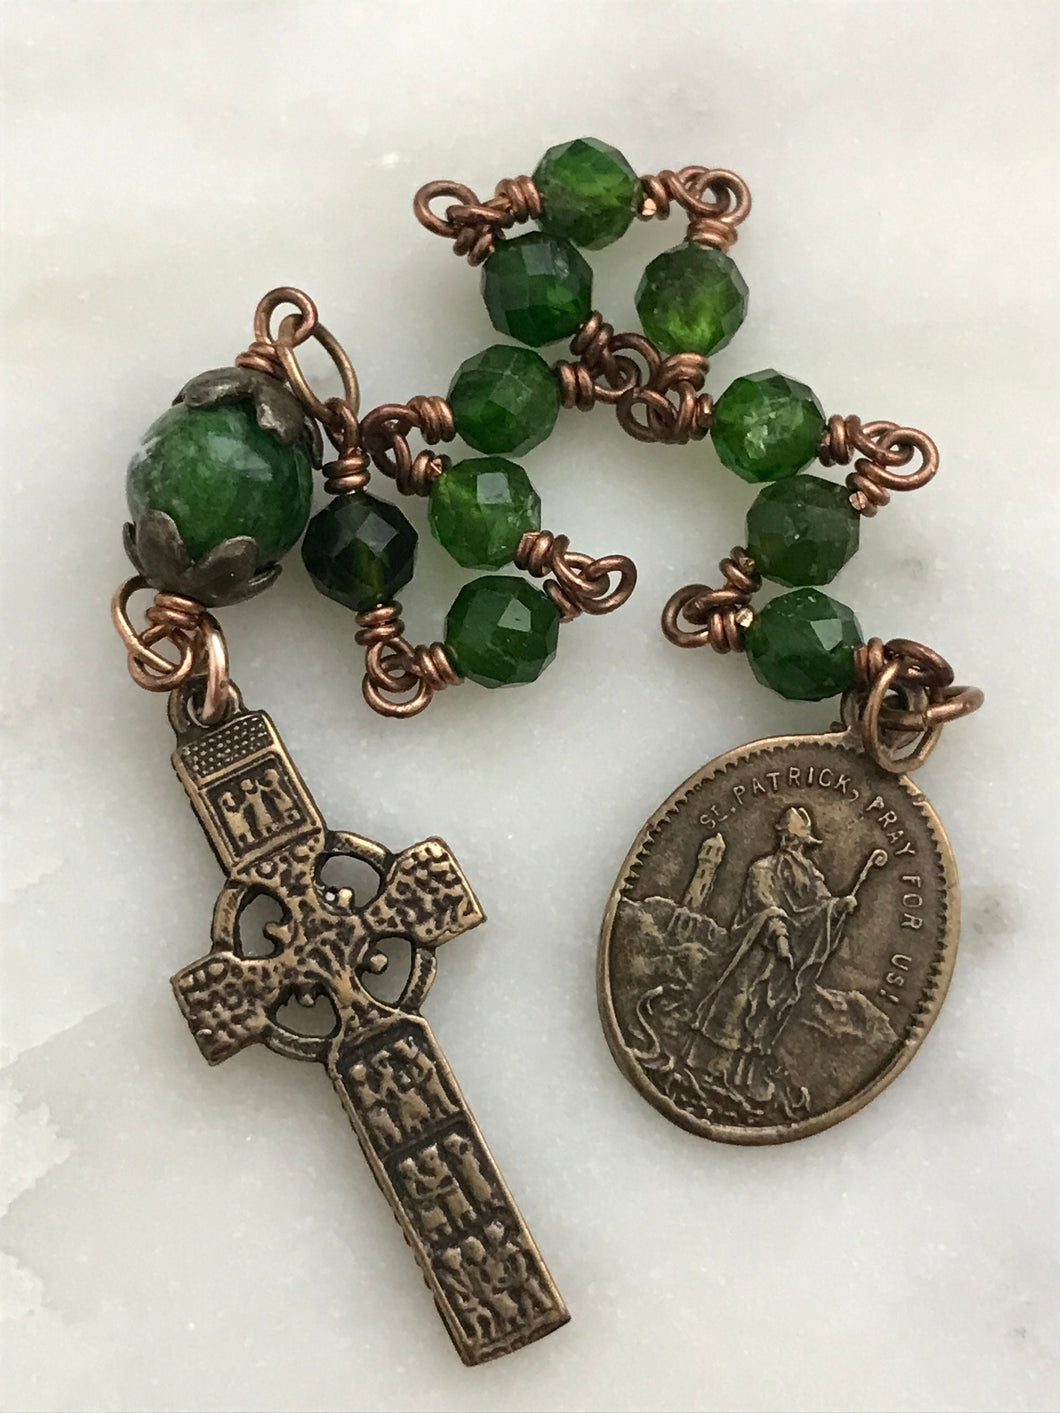 Tiny Saint Patrick Rosary - Celtic - Irish - Single Decade Rosary CeCeAgnes